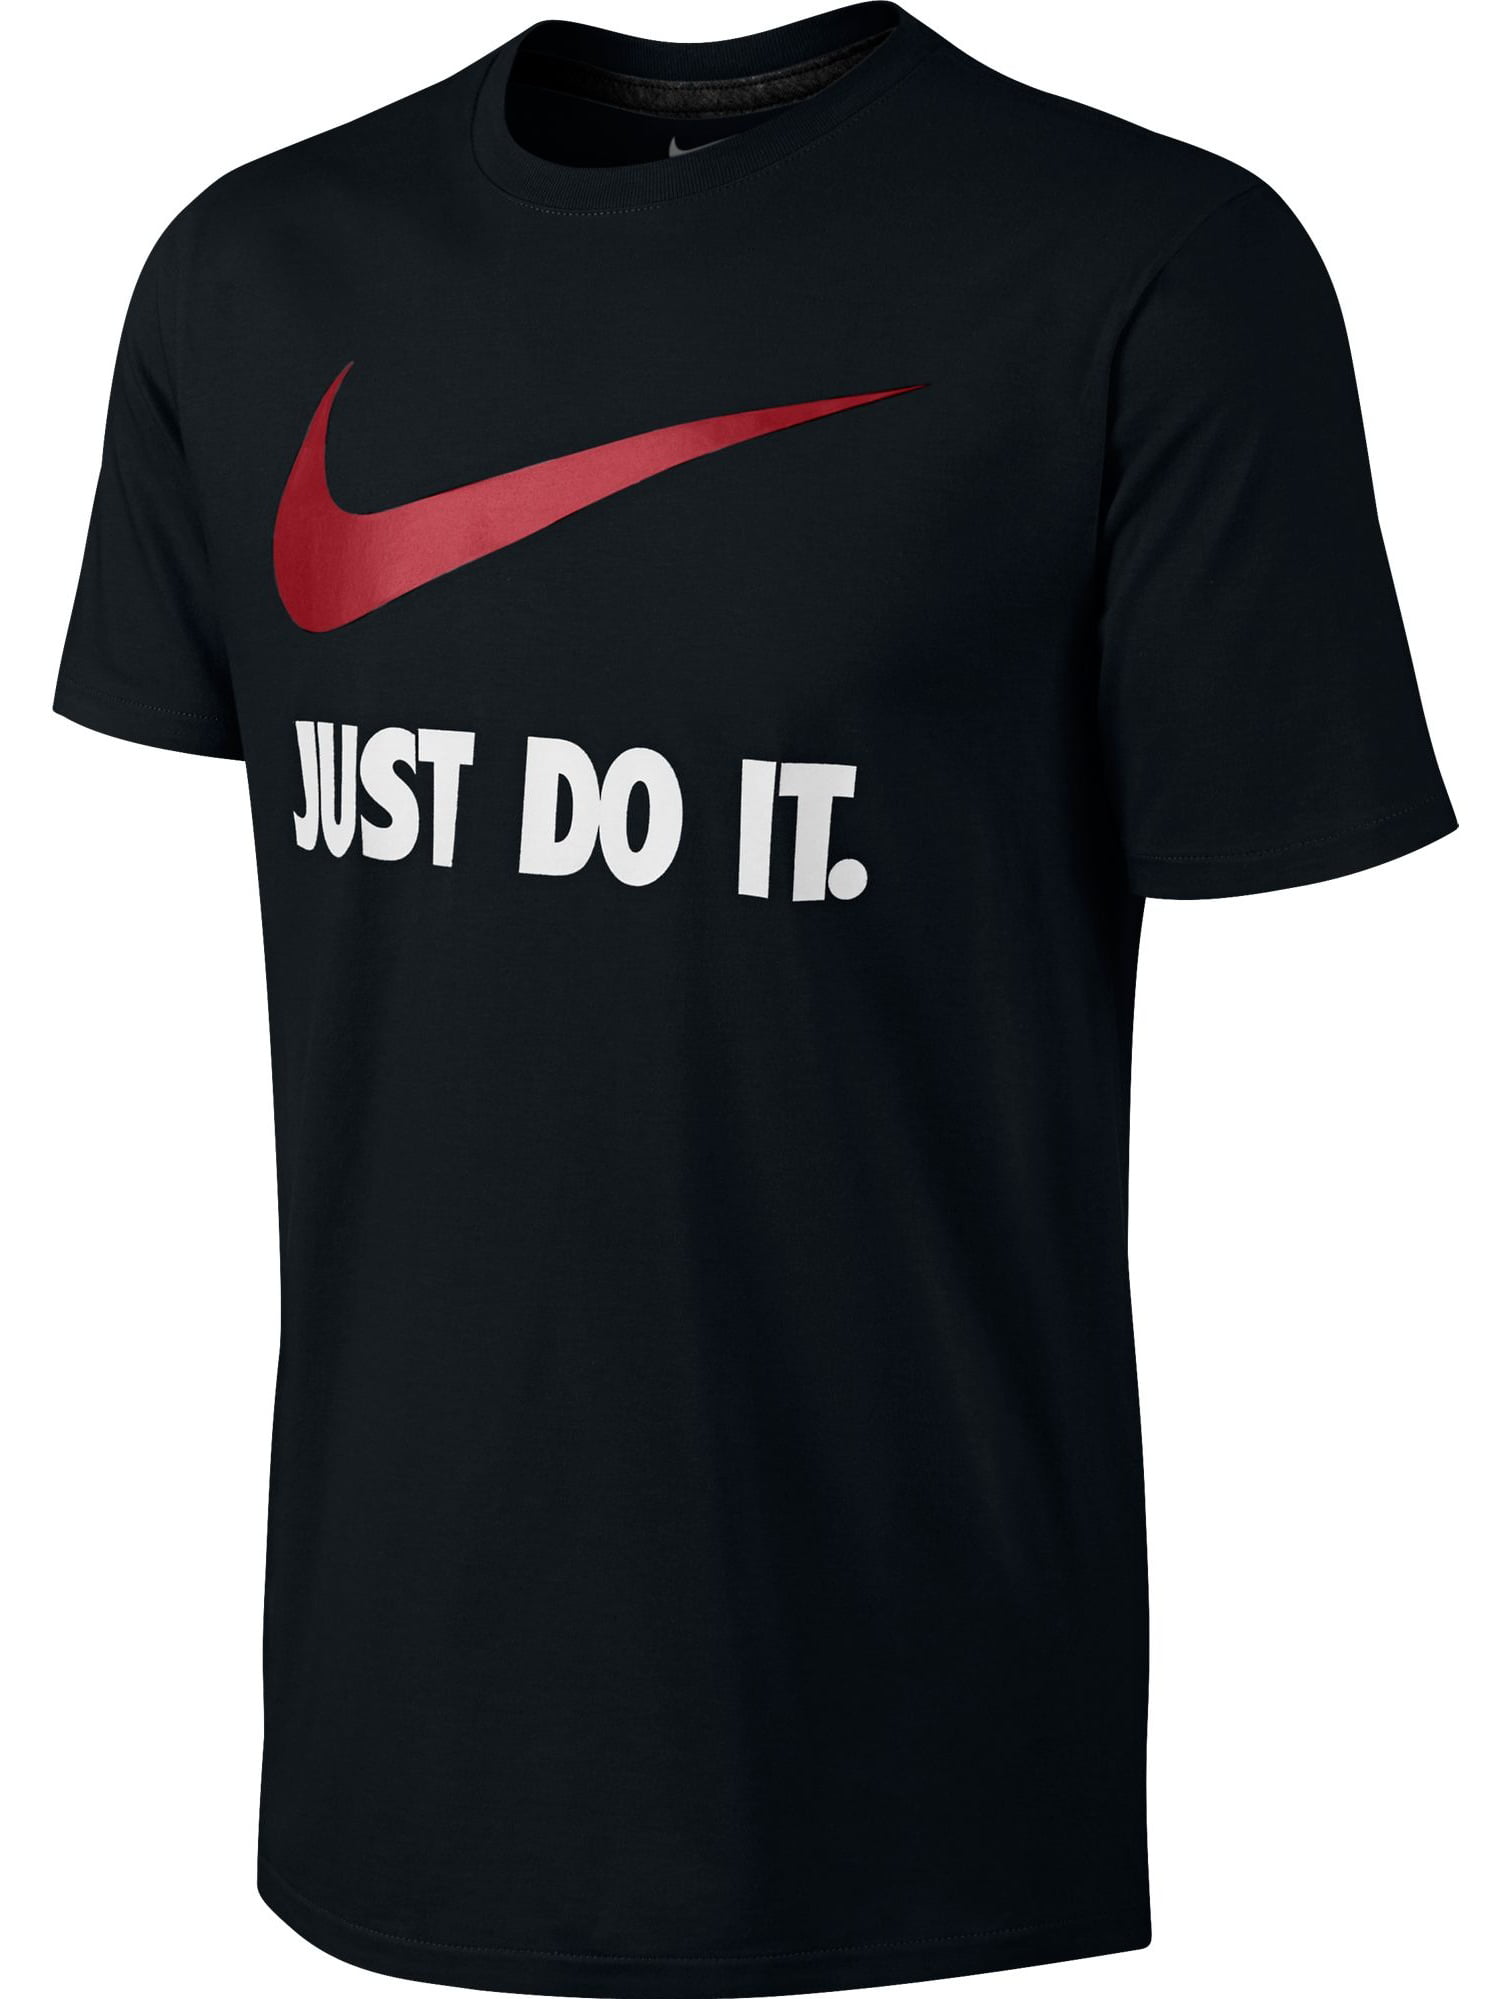 Byen telegram højde Nike Just Do It Swoosh logo Men's T-Shirt Black/White/Red 707360-010 -  Walmart.com